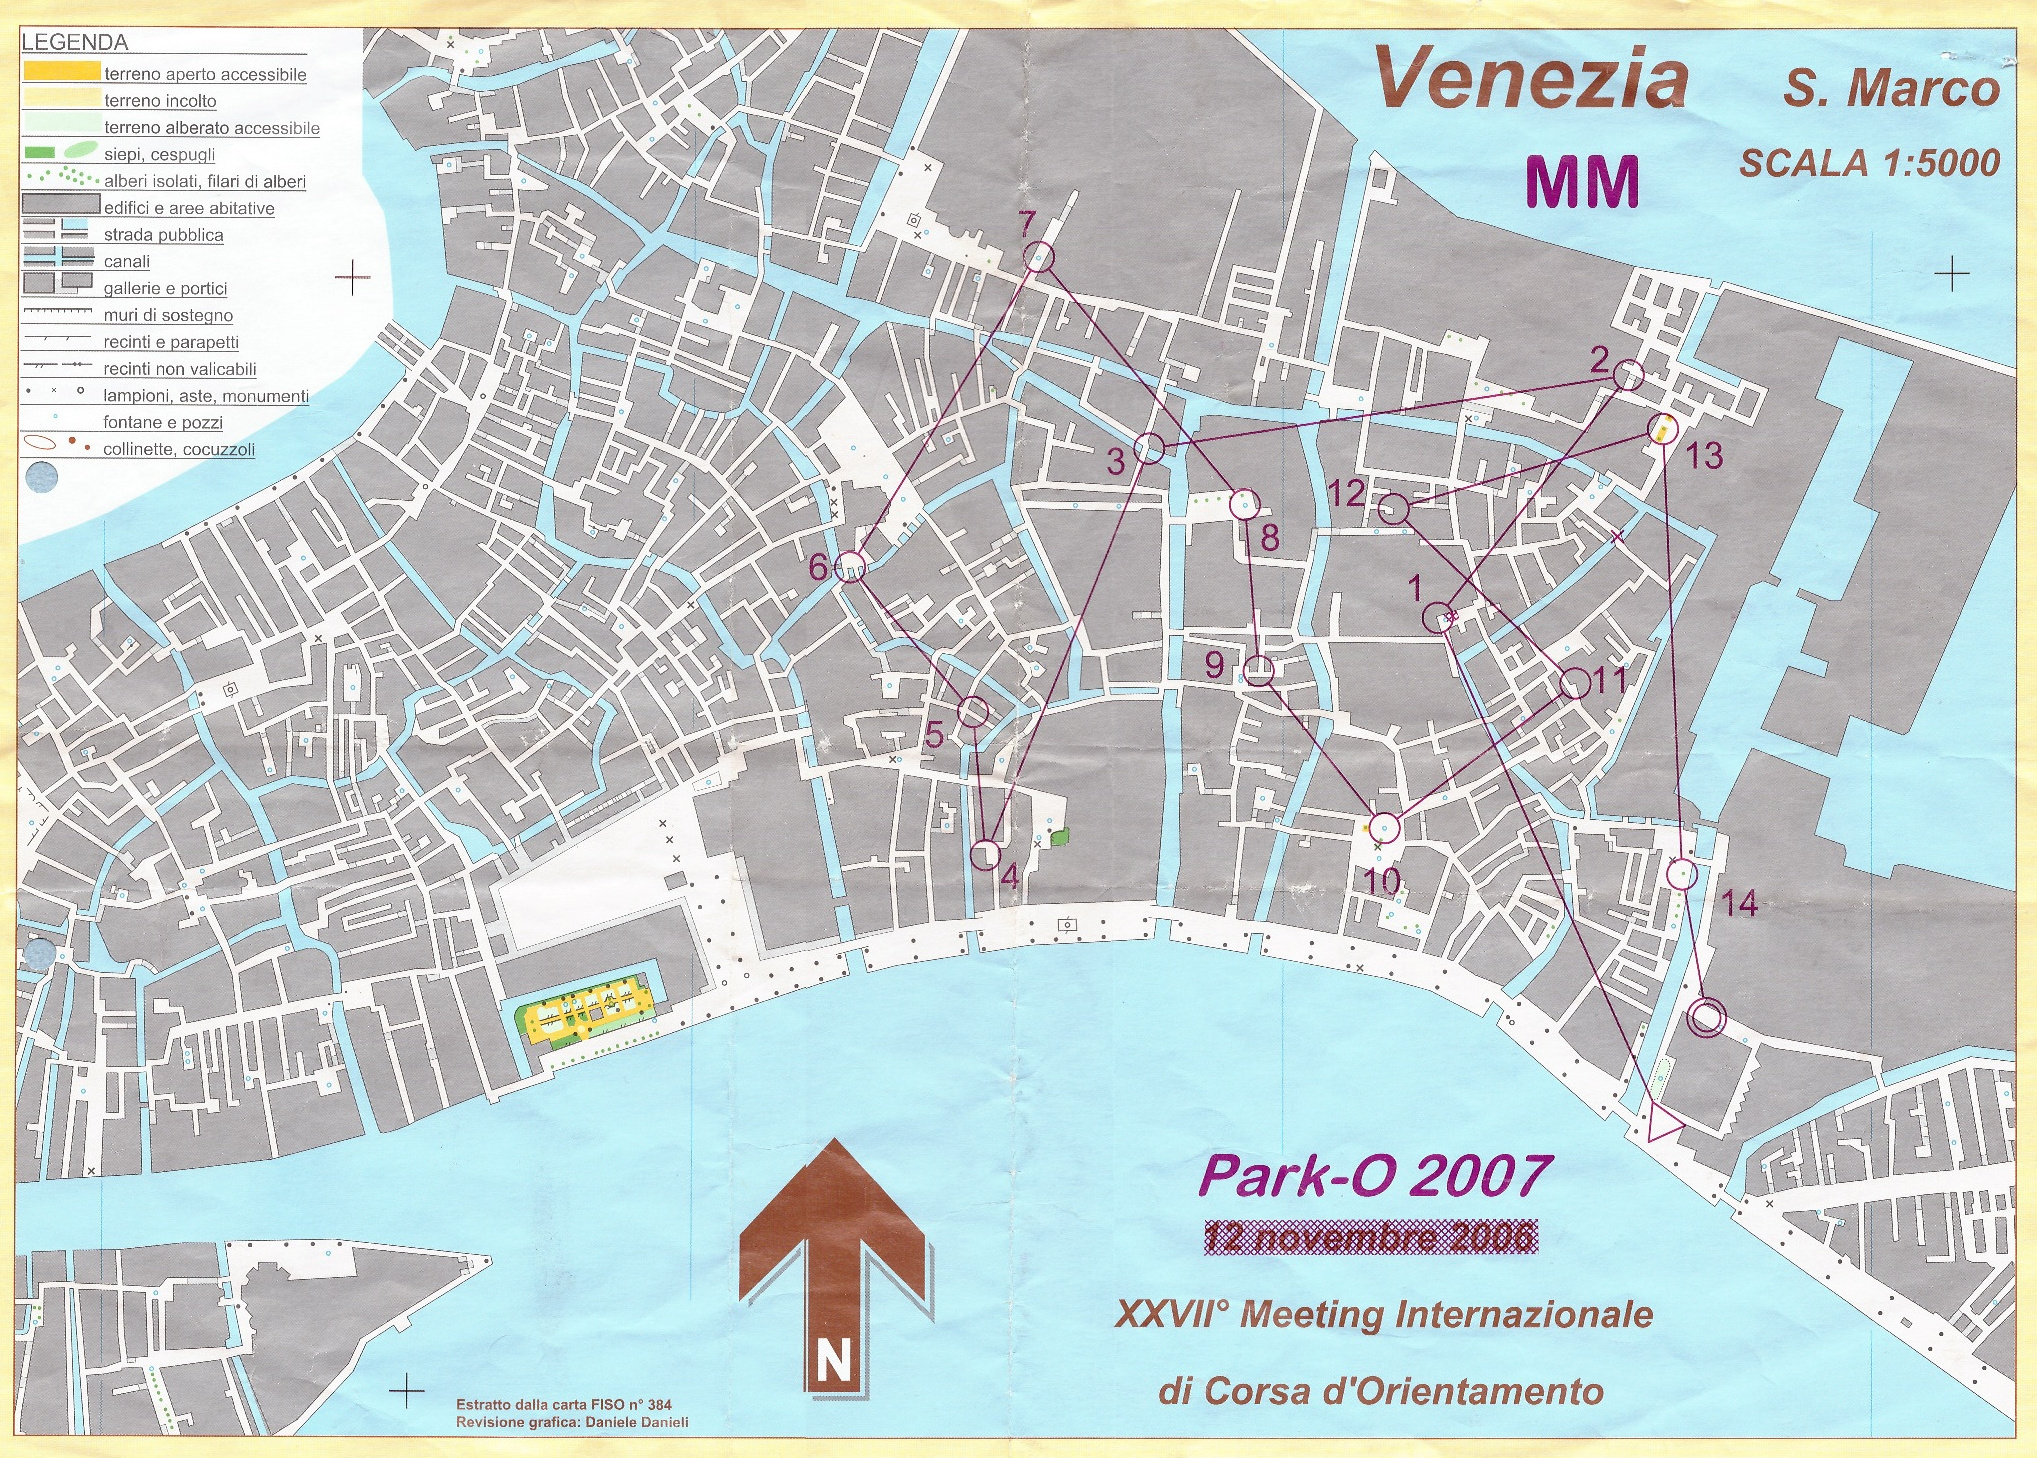 XXVII. Venedig O-Meeting - Park-O 2007 (10.11.2007)